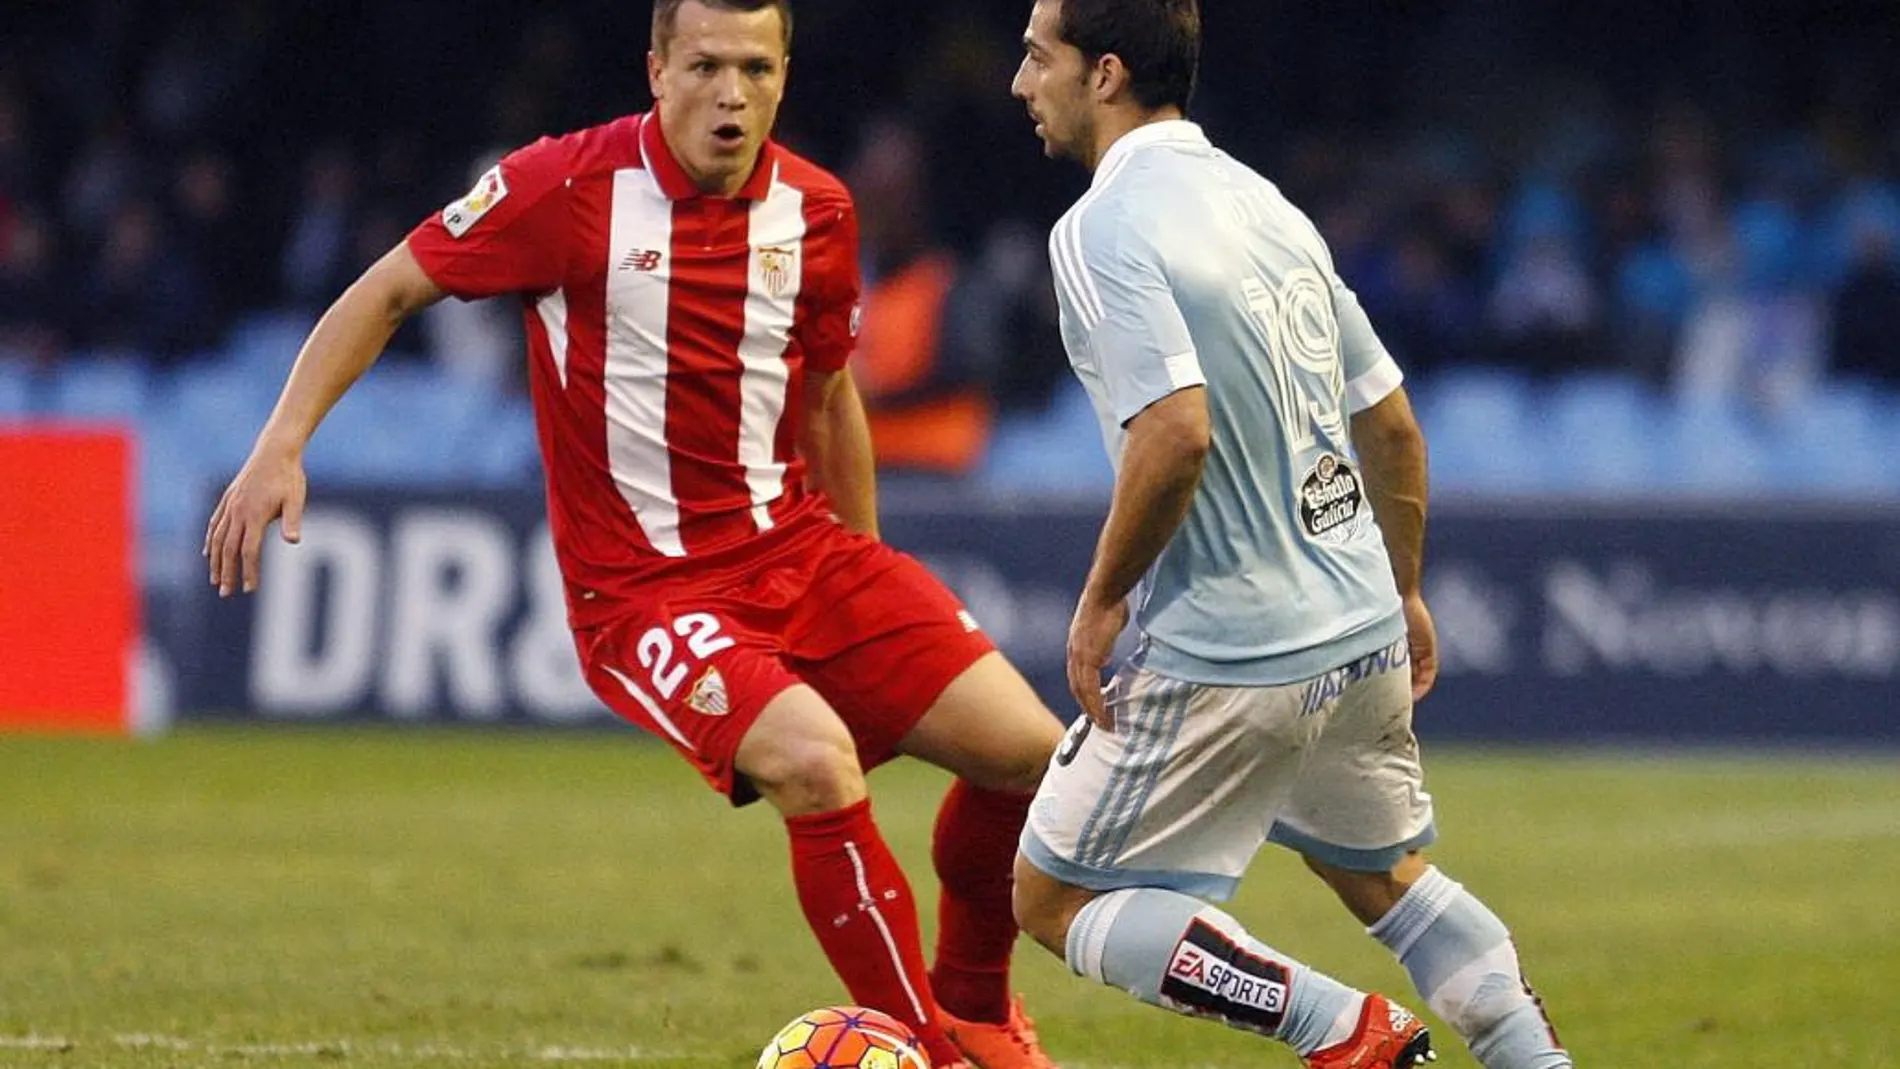 El defensa del Celta de Vigo Jonny Castro disputa un balón con el centrocampista del Sevilla Yevhen Konoplyanka